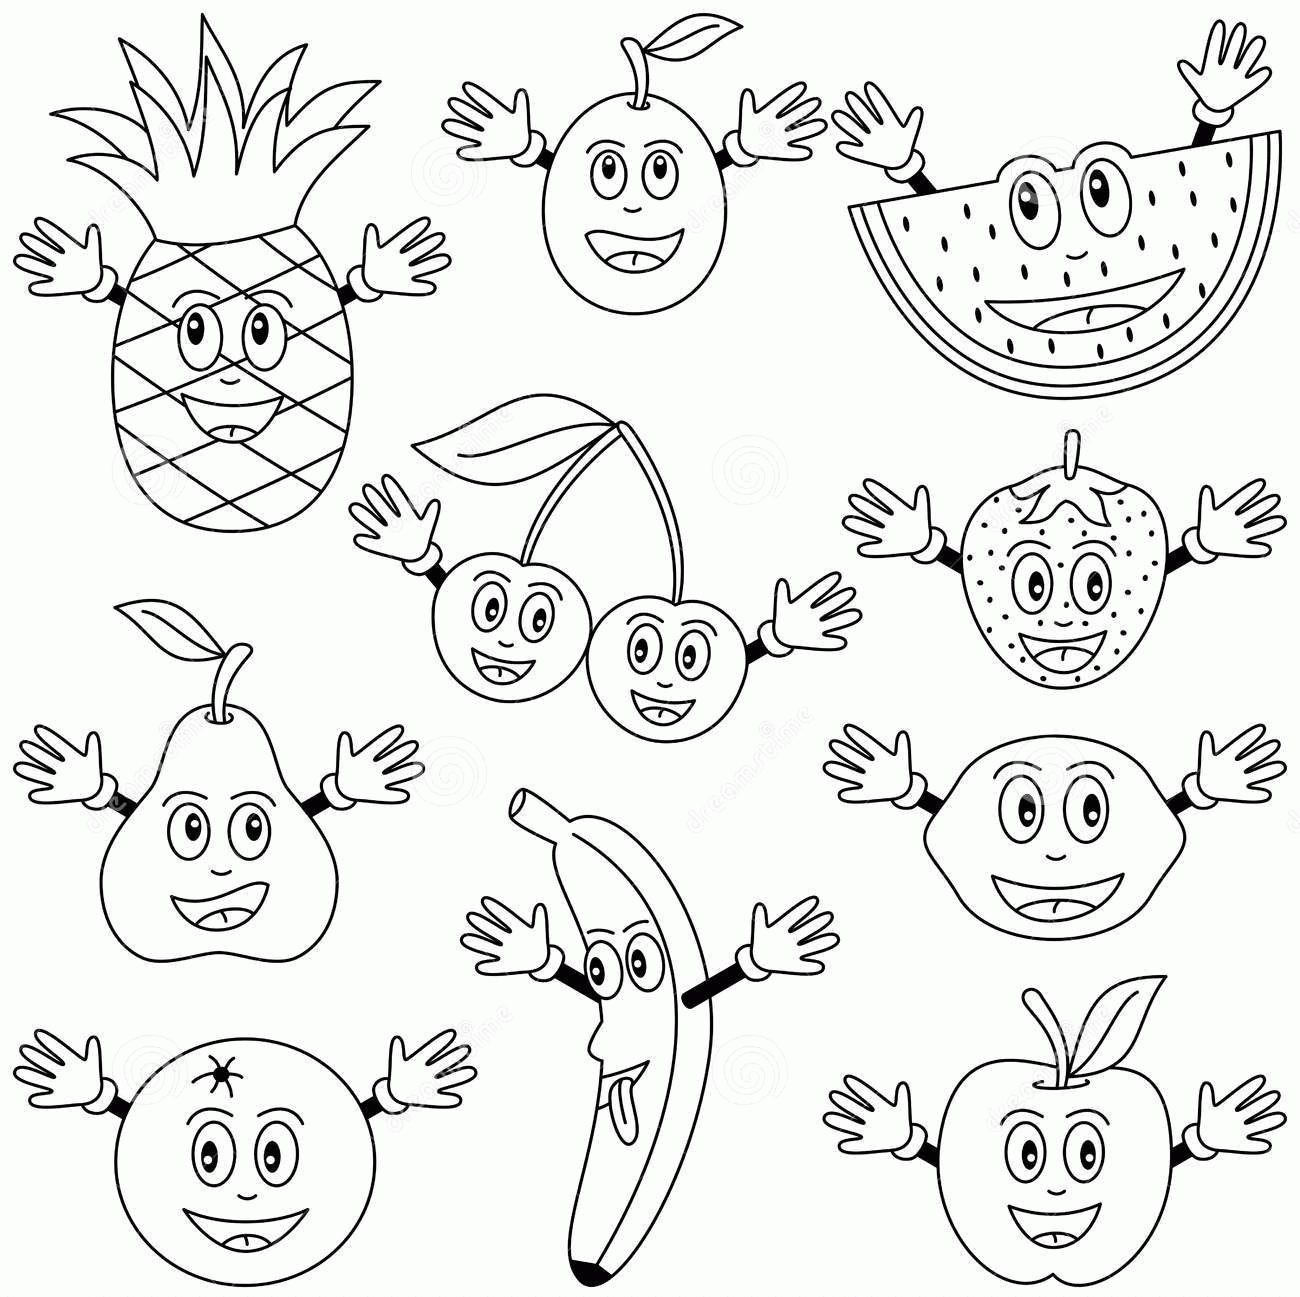 Fruits & Vegetables | Crafts and Worksheets for Preschool,Toddler ...